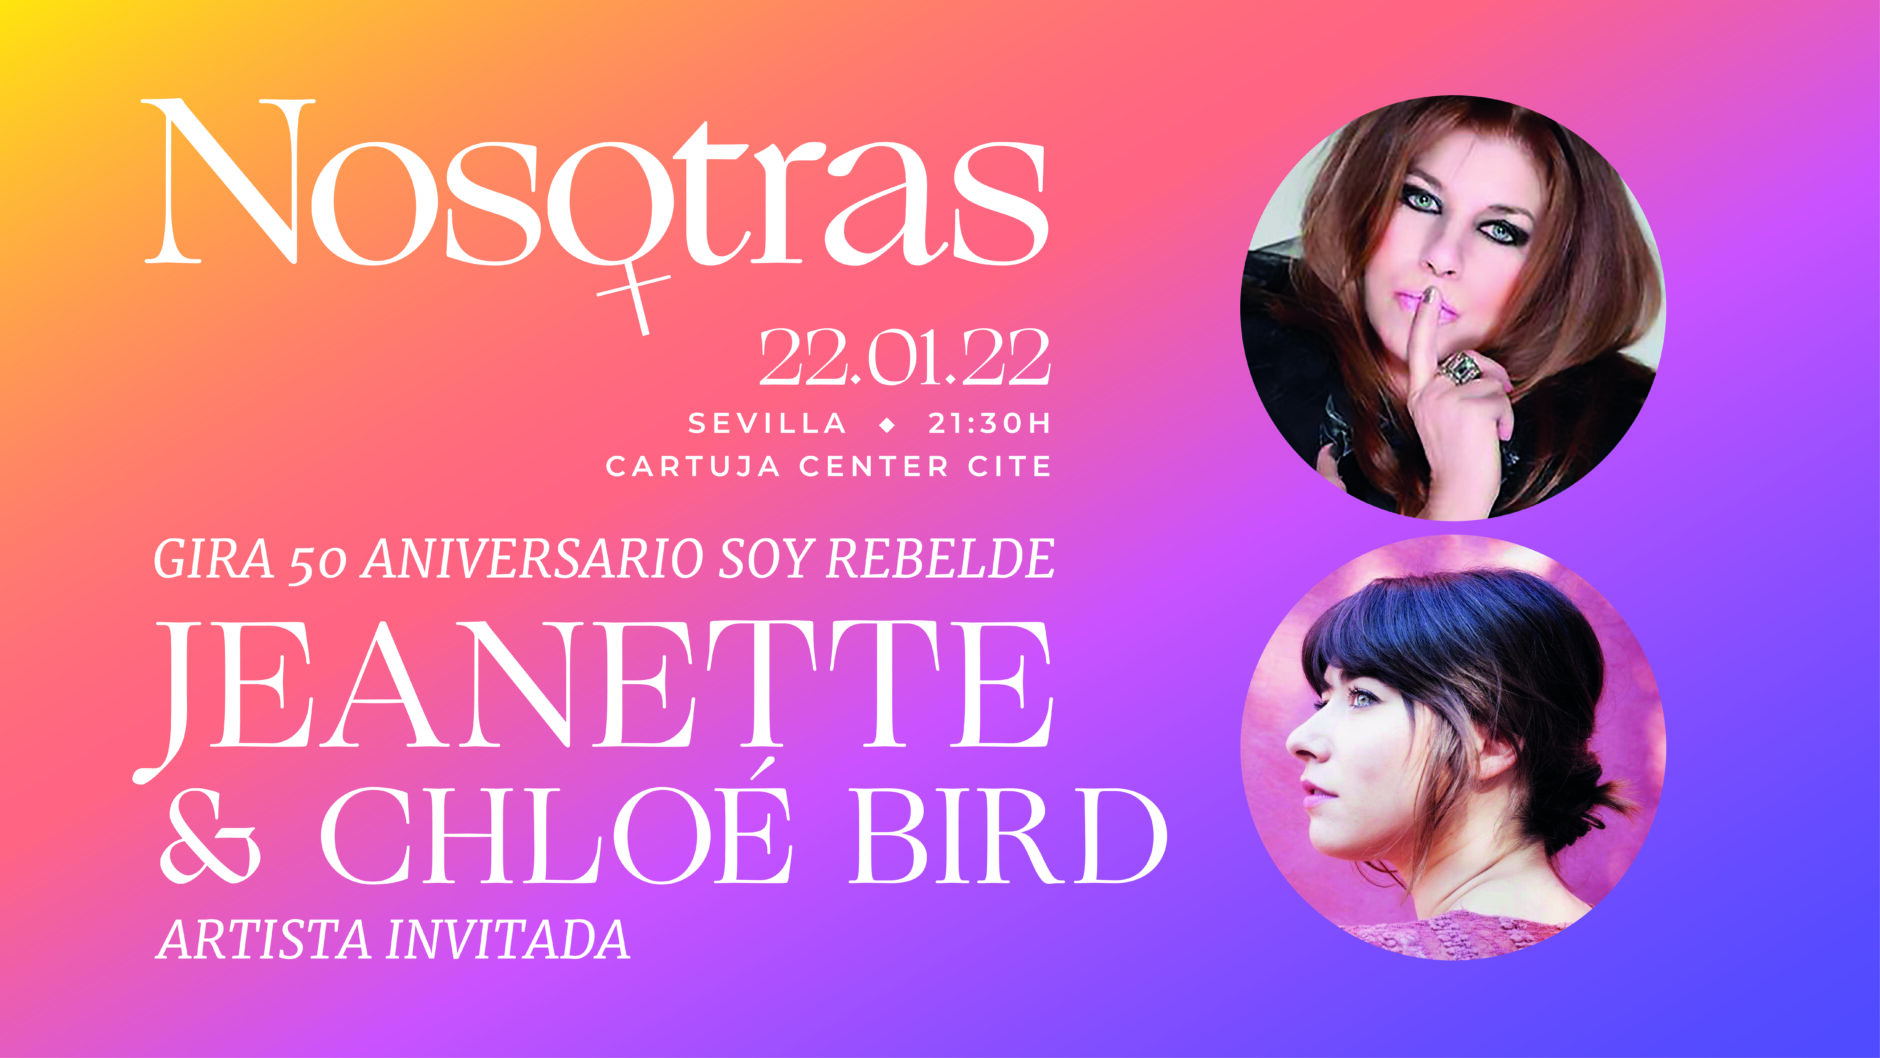 NOSOTRAS; JEANETTE, GIRA 50 ANIVERSARIO, "SOY REBELDE"-artista invitada Chloé Bird 1